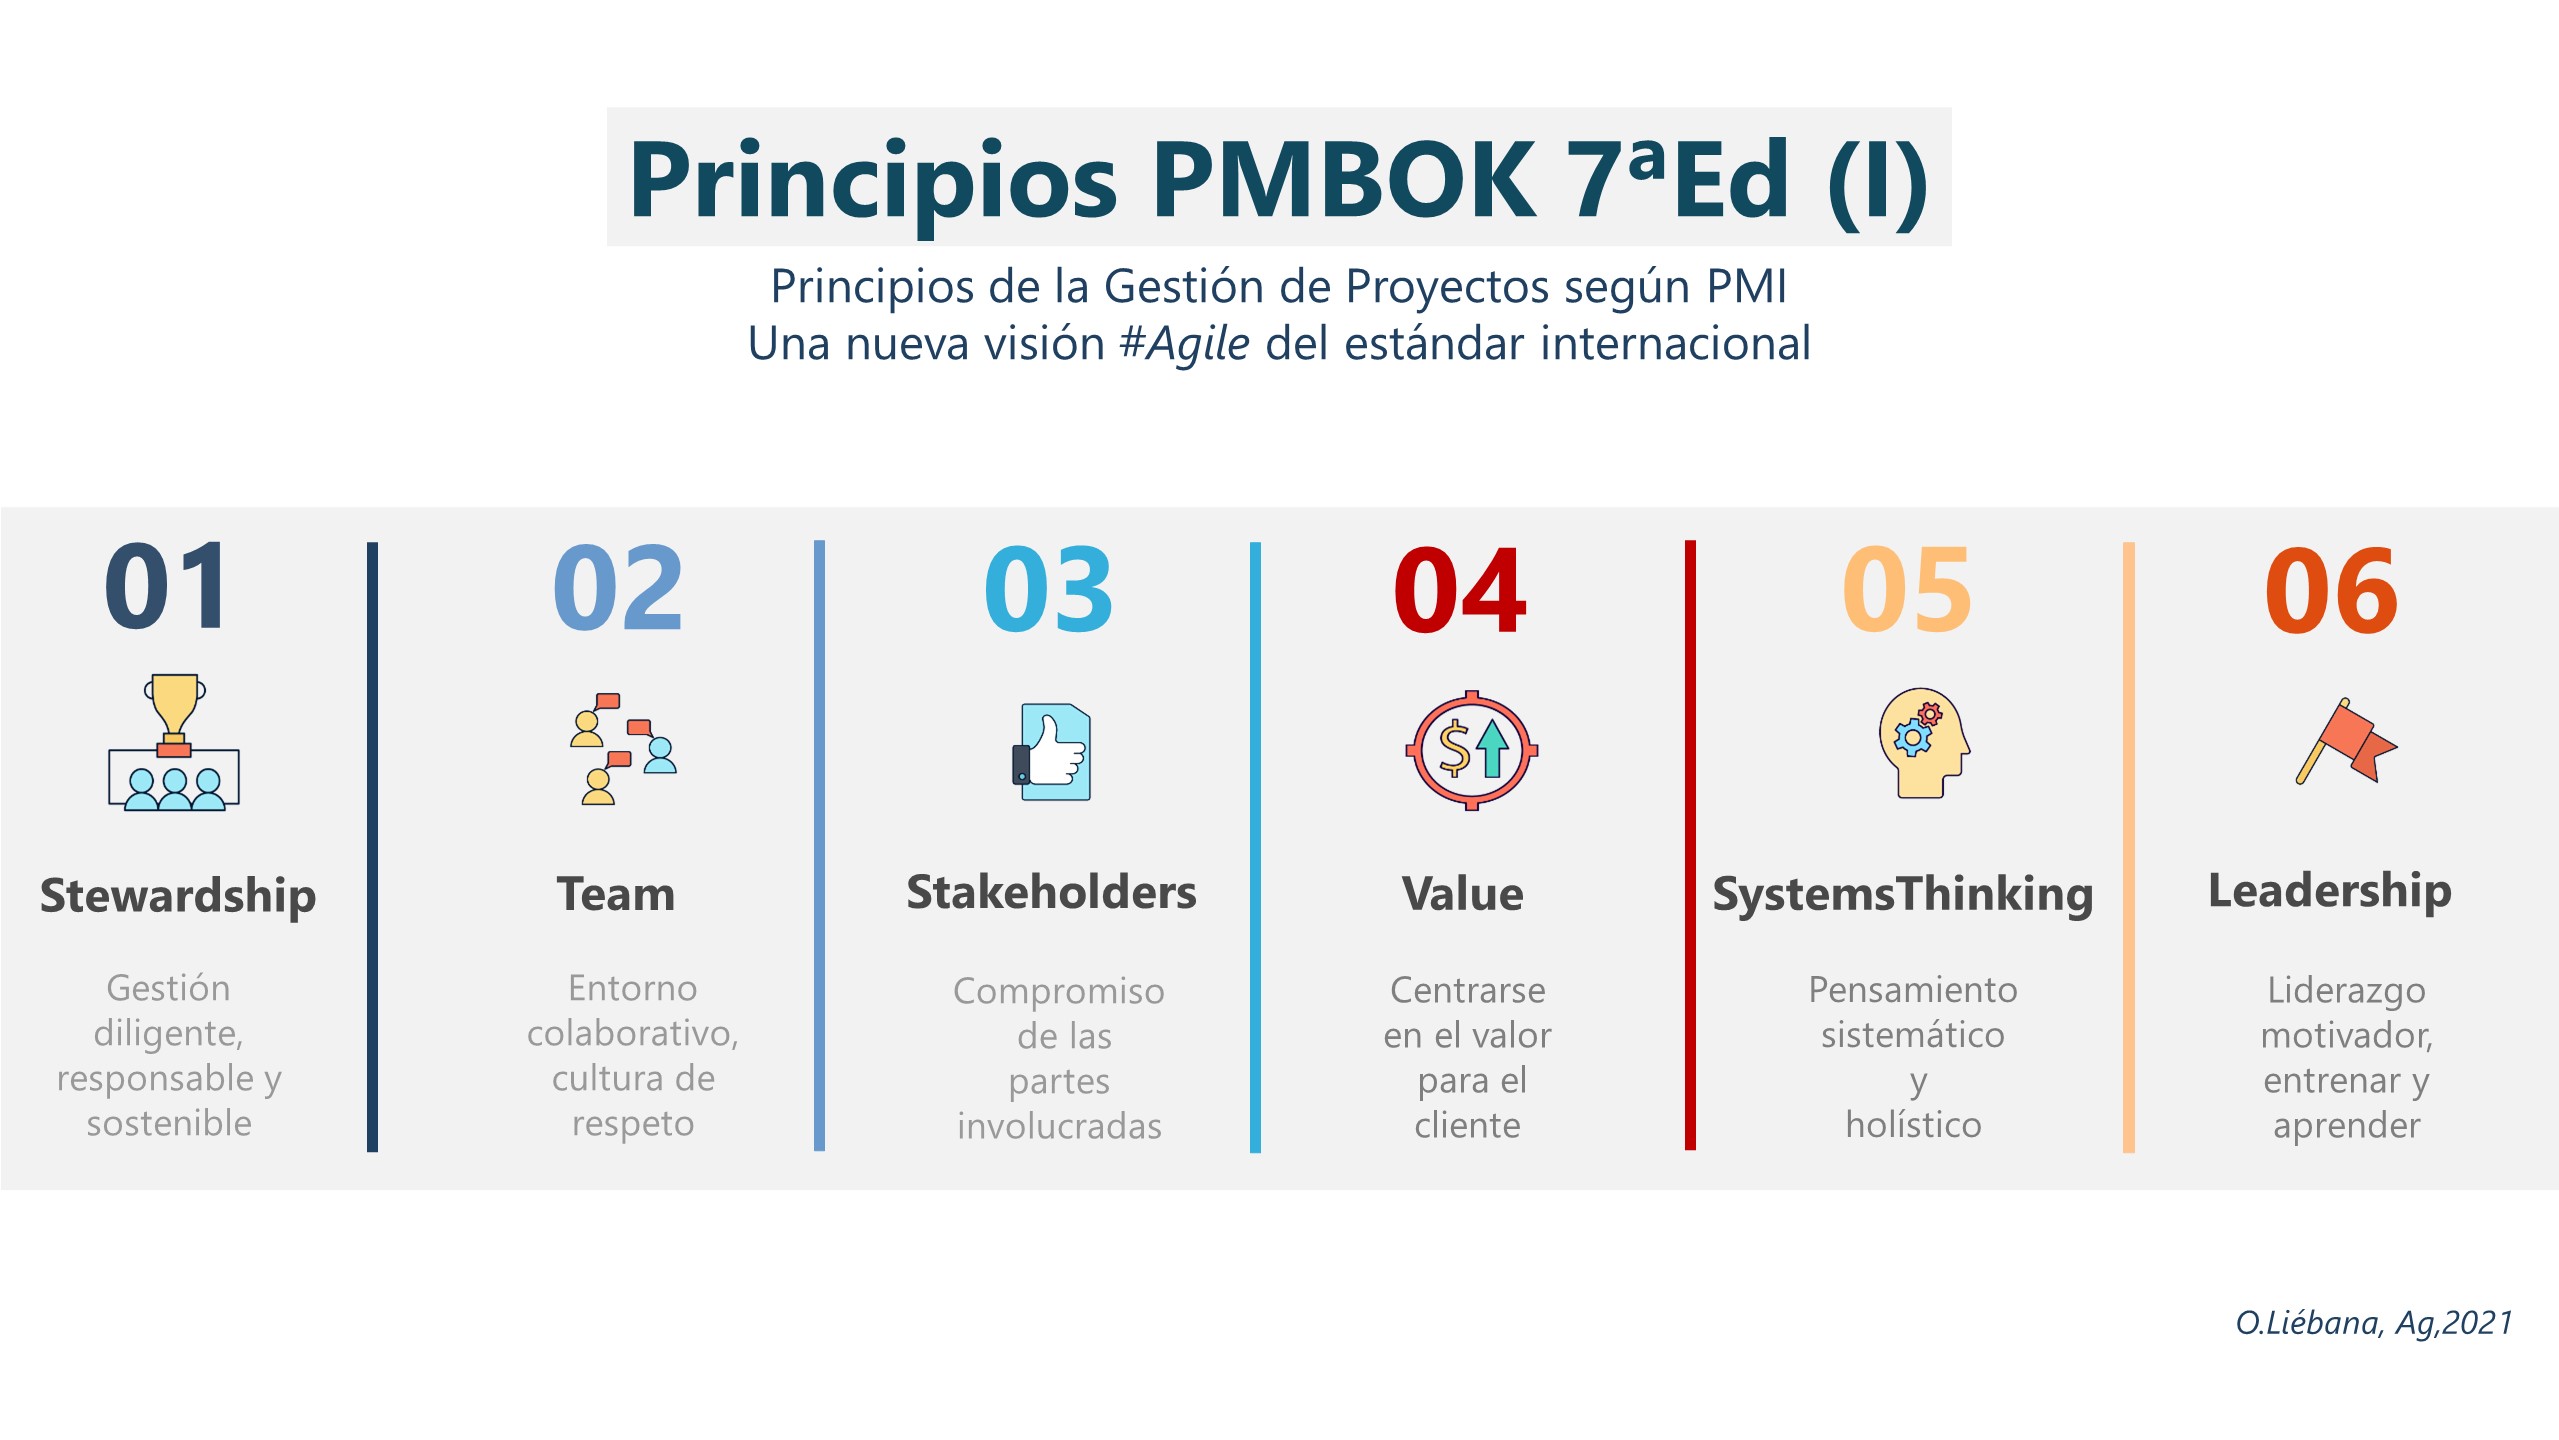 12 Principios PMBOK 7ºed, una nueva visión Agile (I)